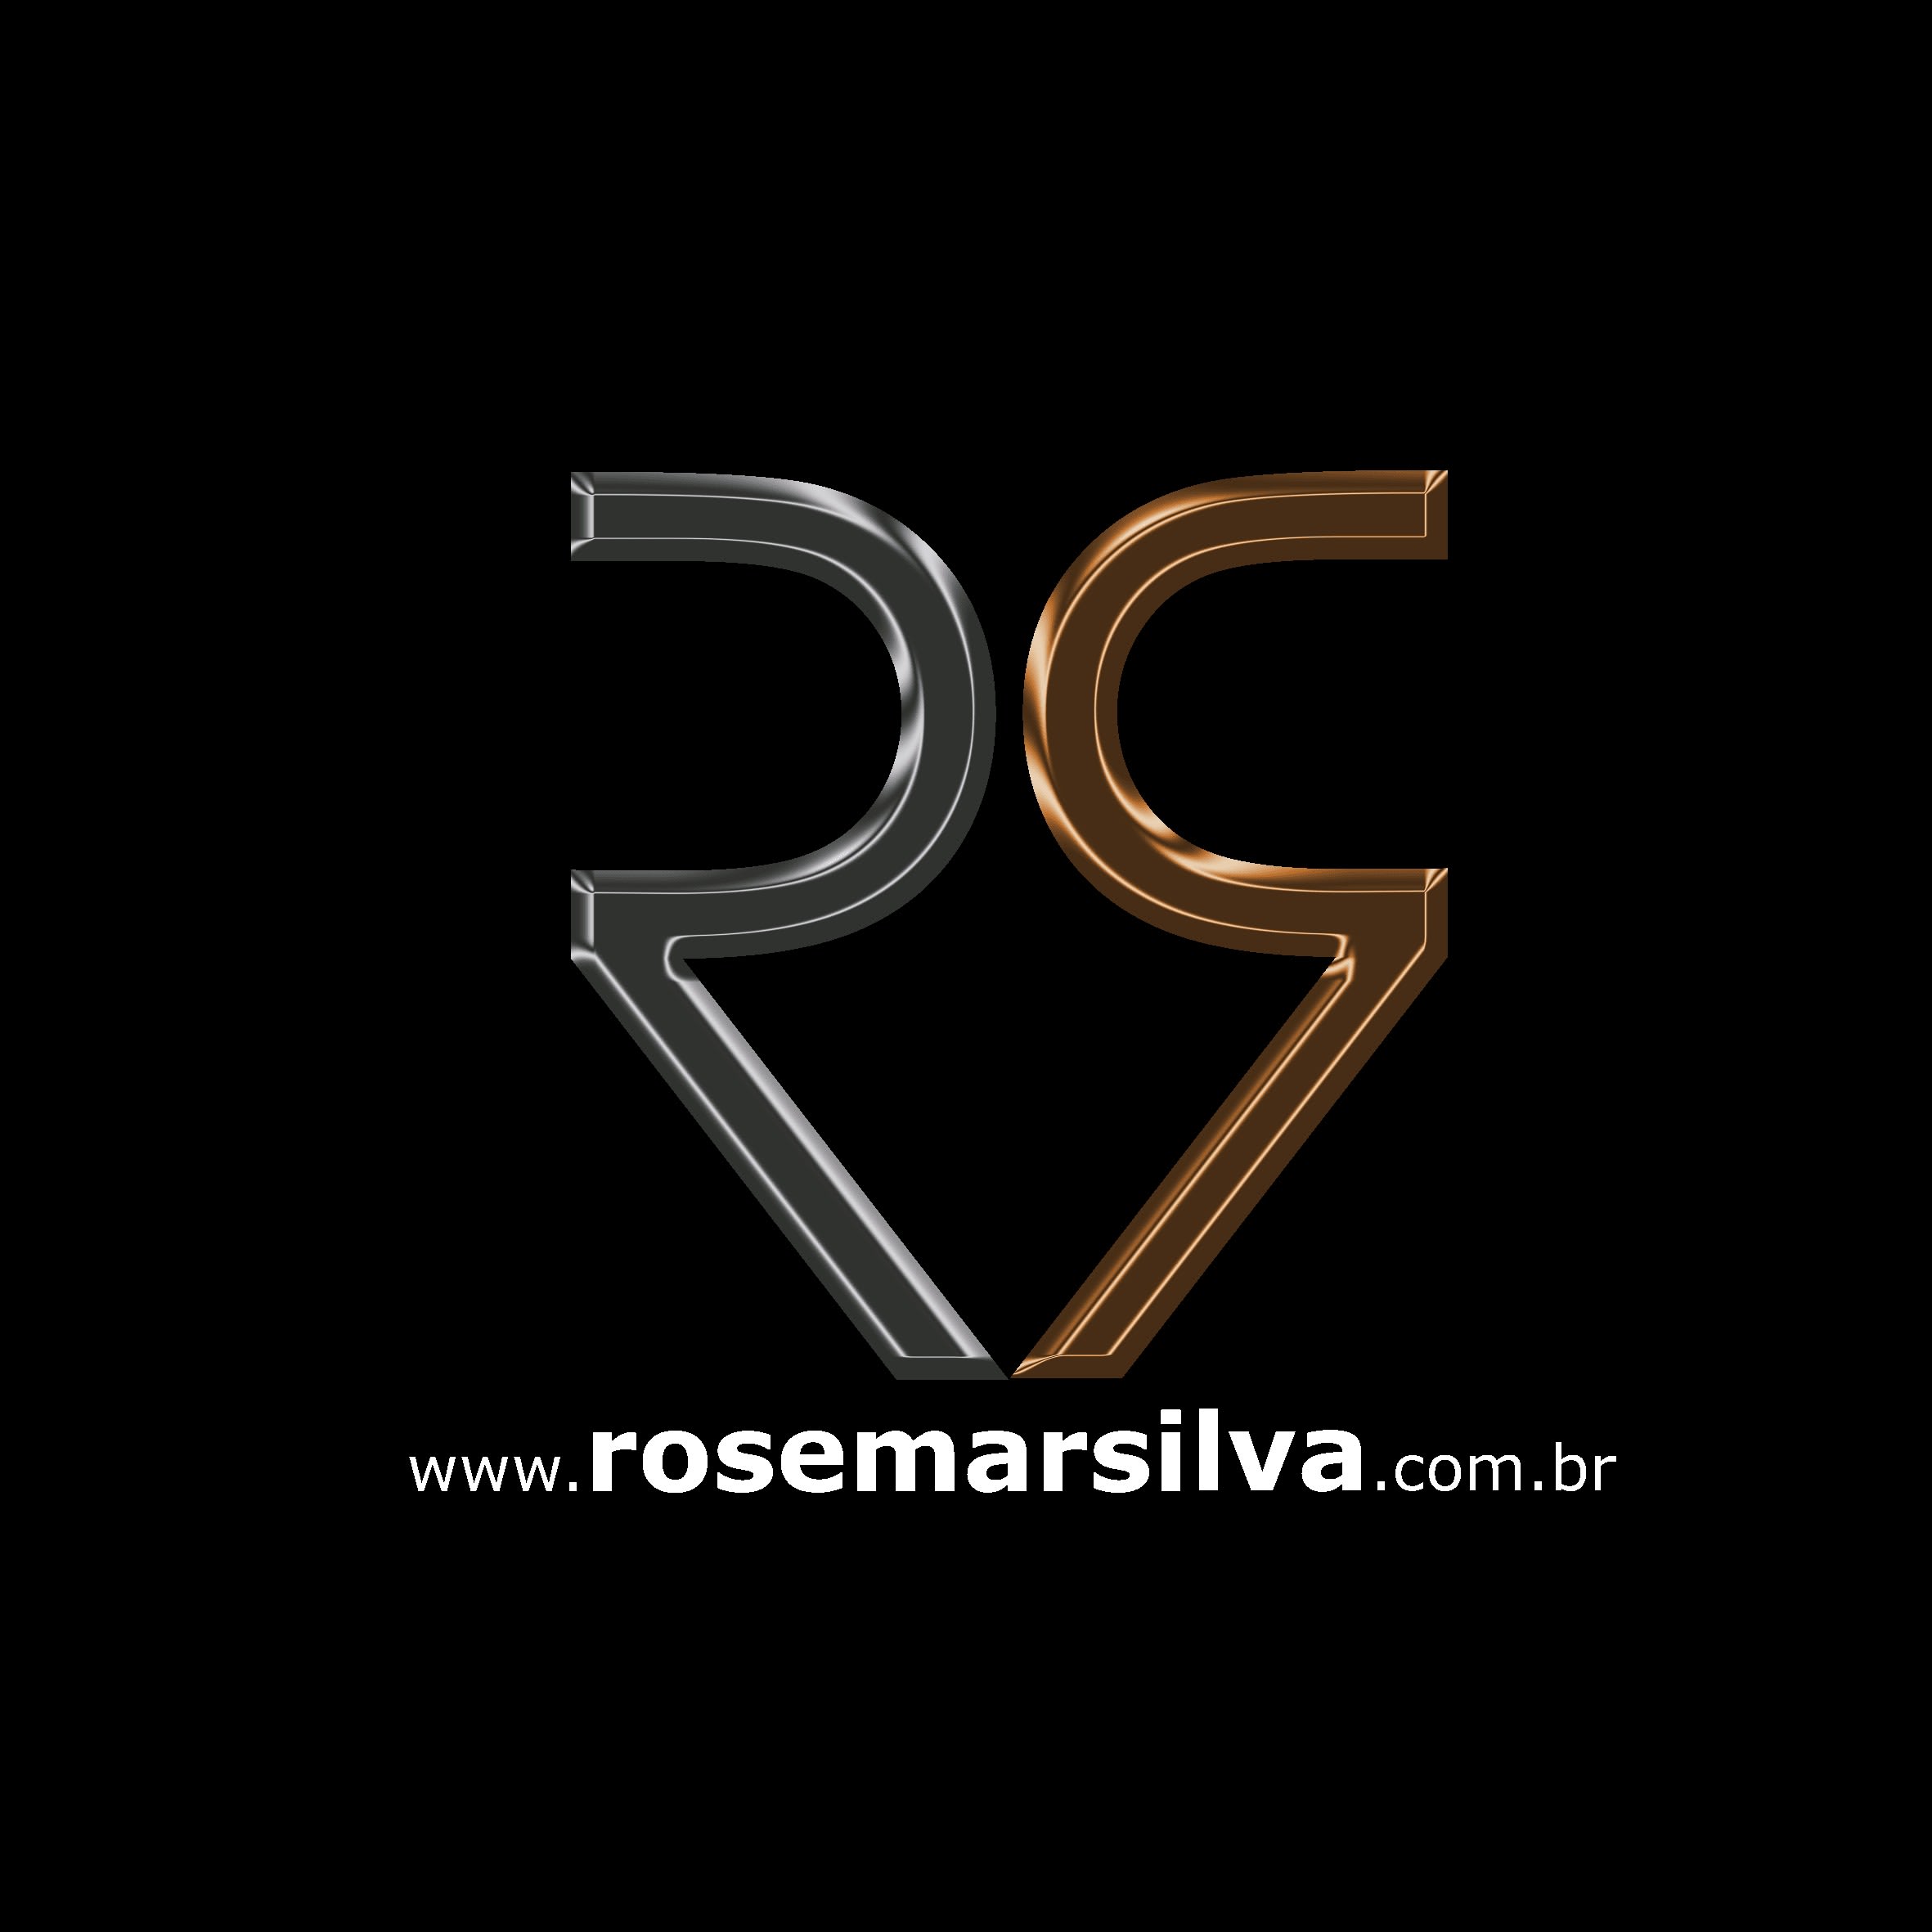 Rosemar Silva